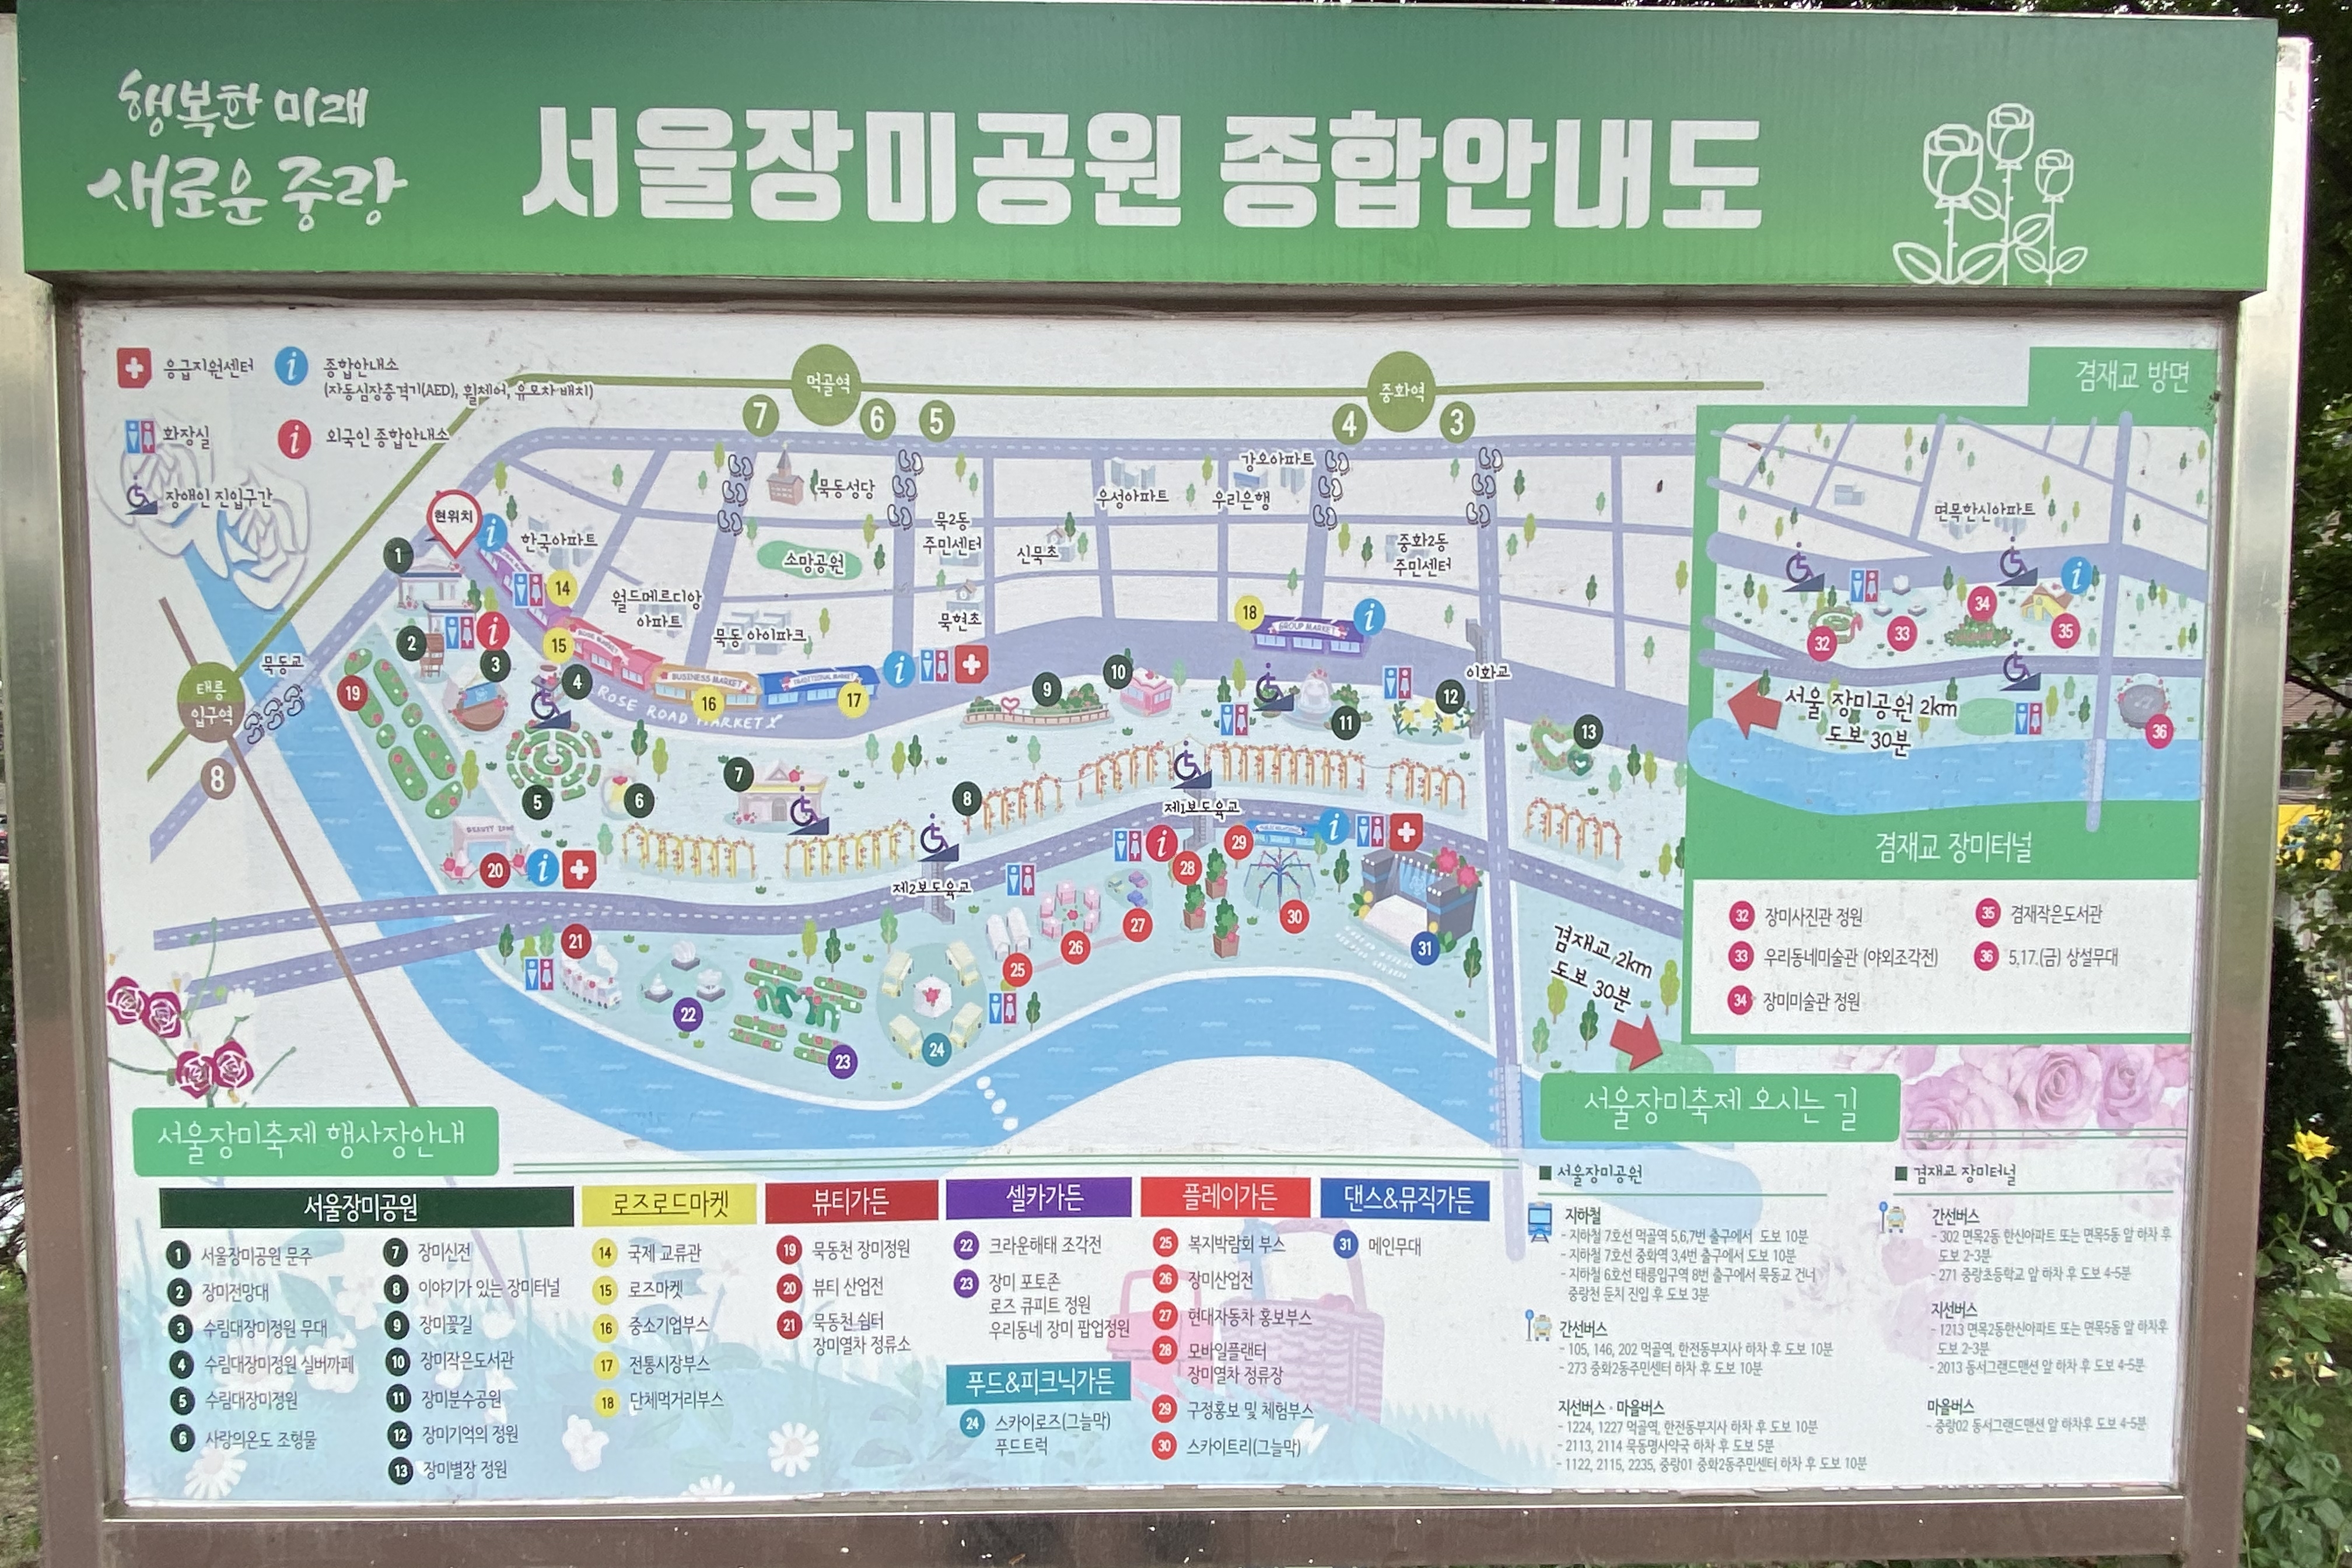 안내데스크/안내판0 : 서울장미공원(중랑장미공원) 안내판2